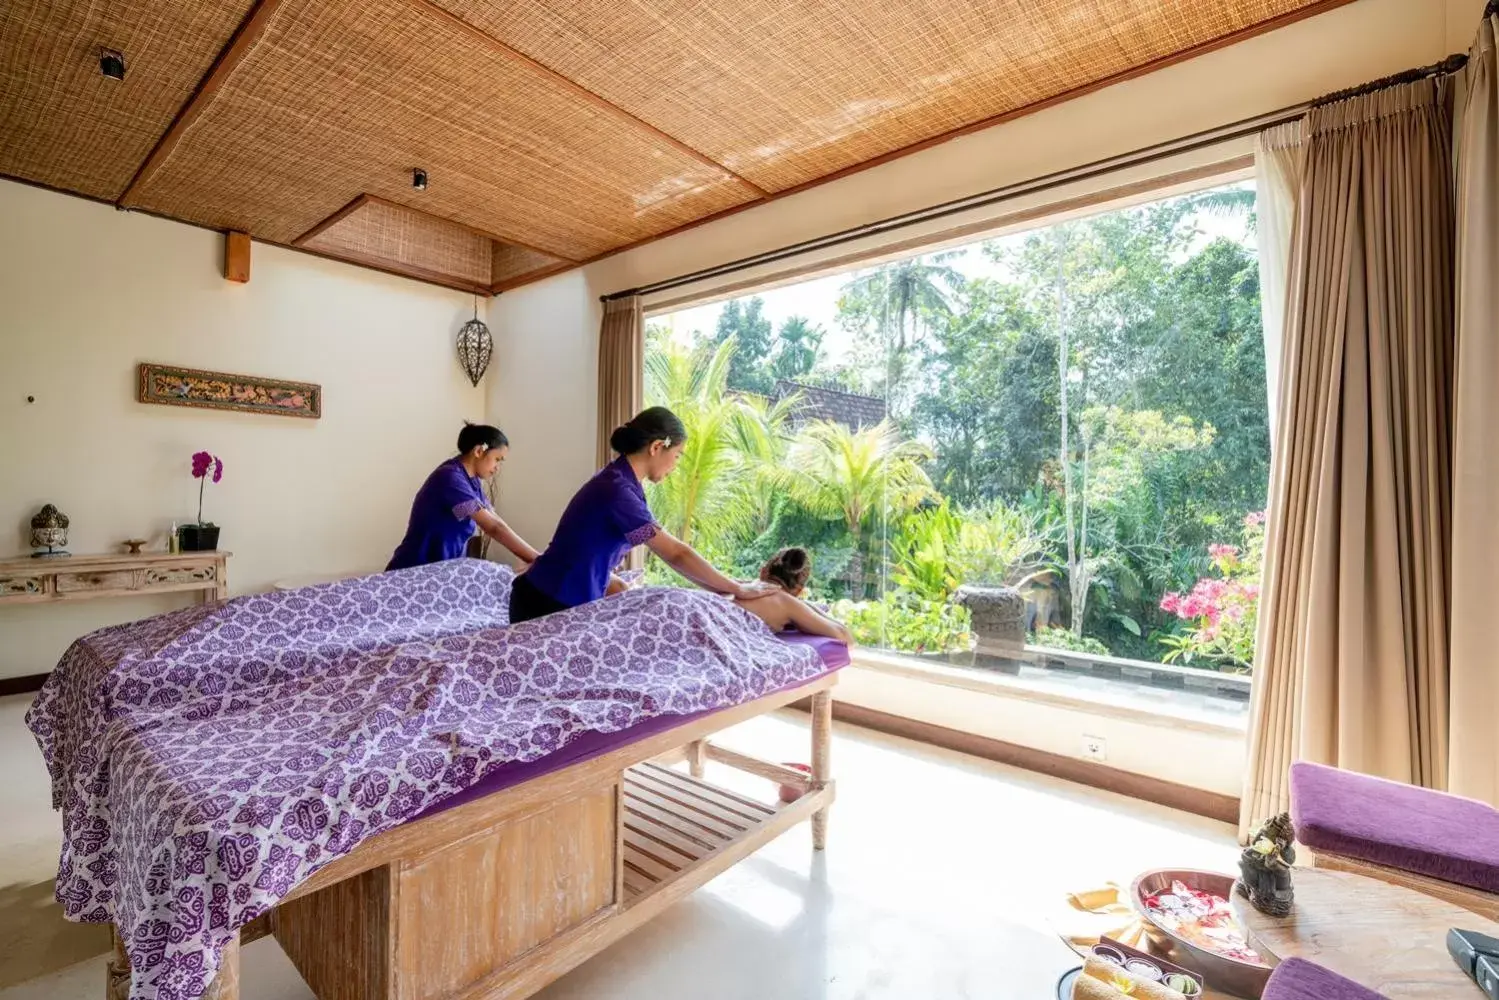 Massage in Pramana Watu Kurung